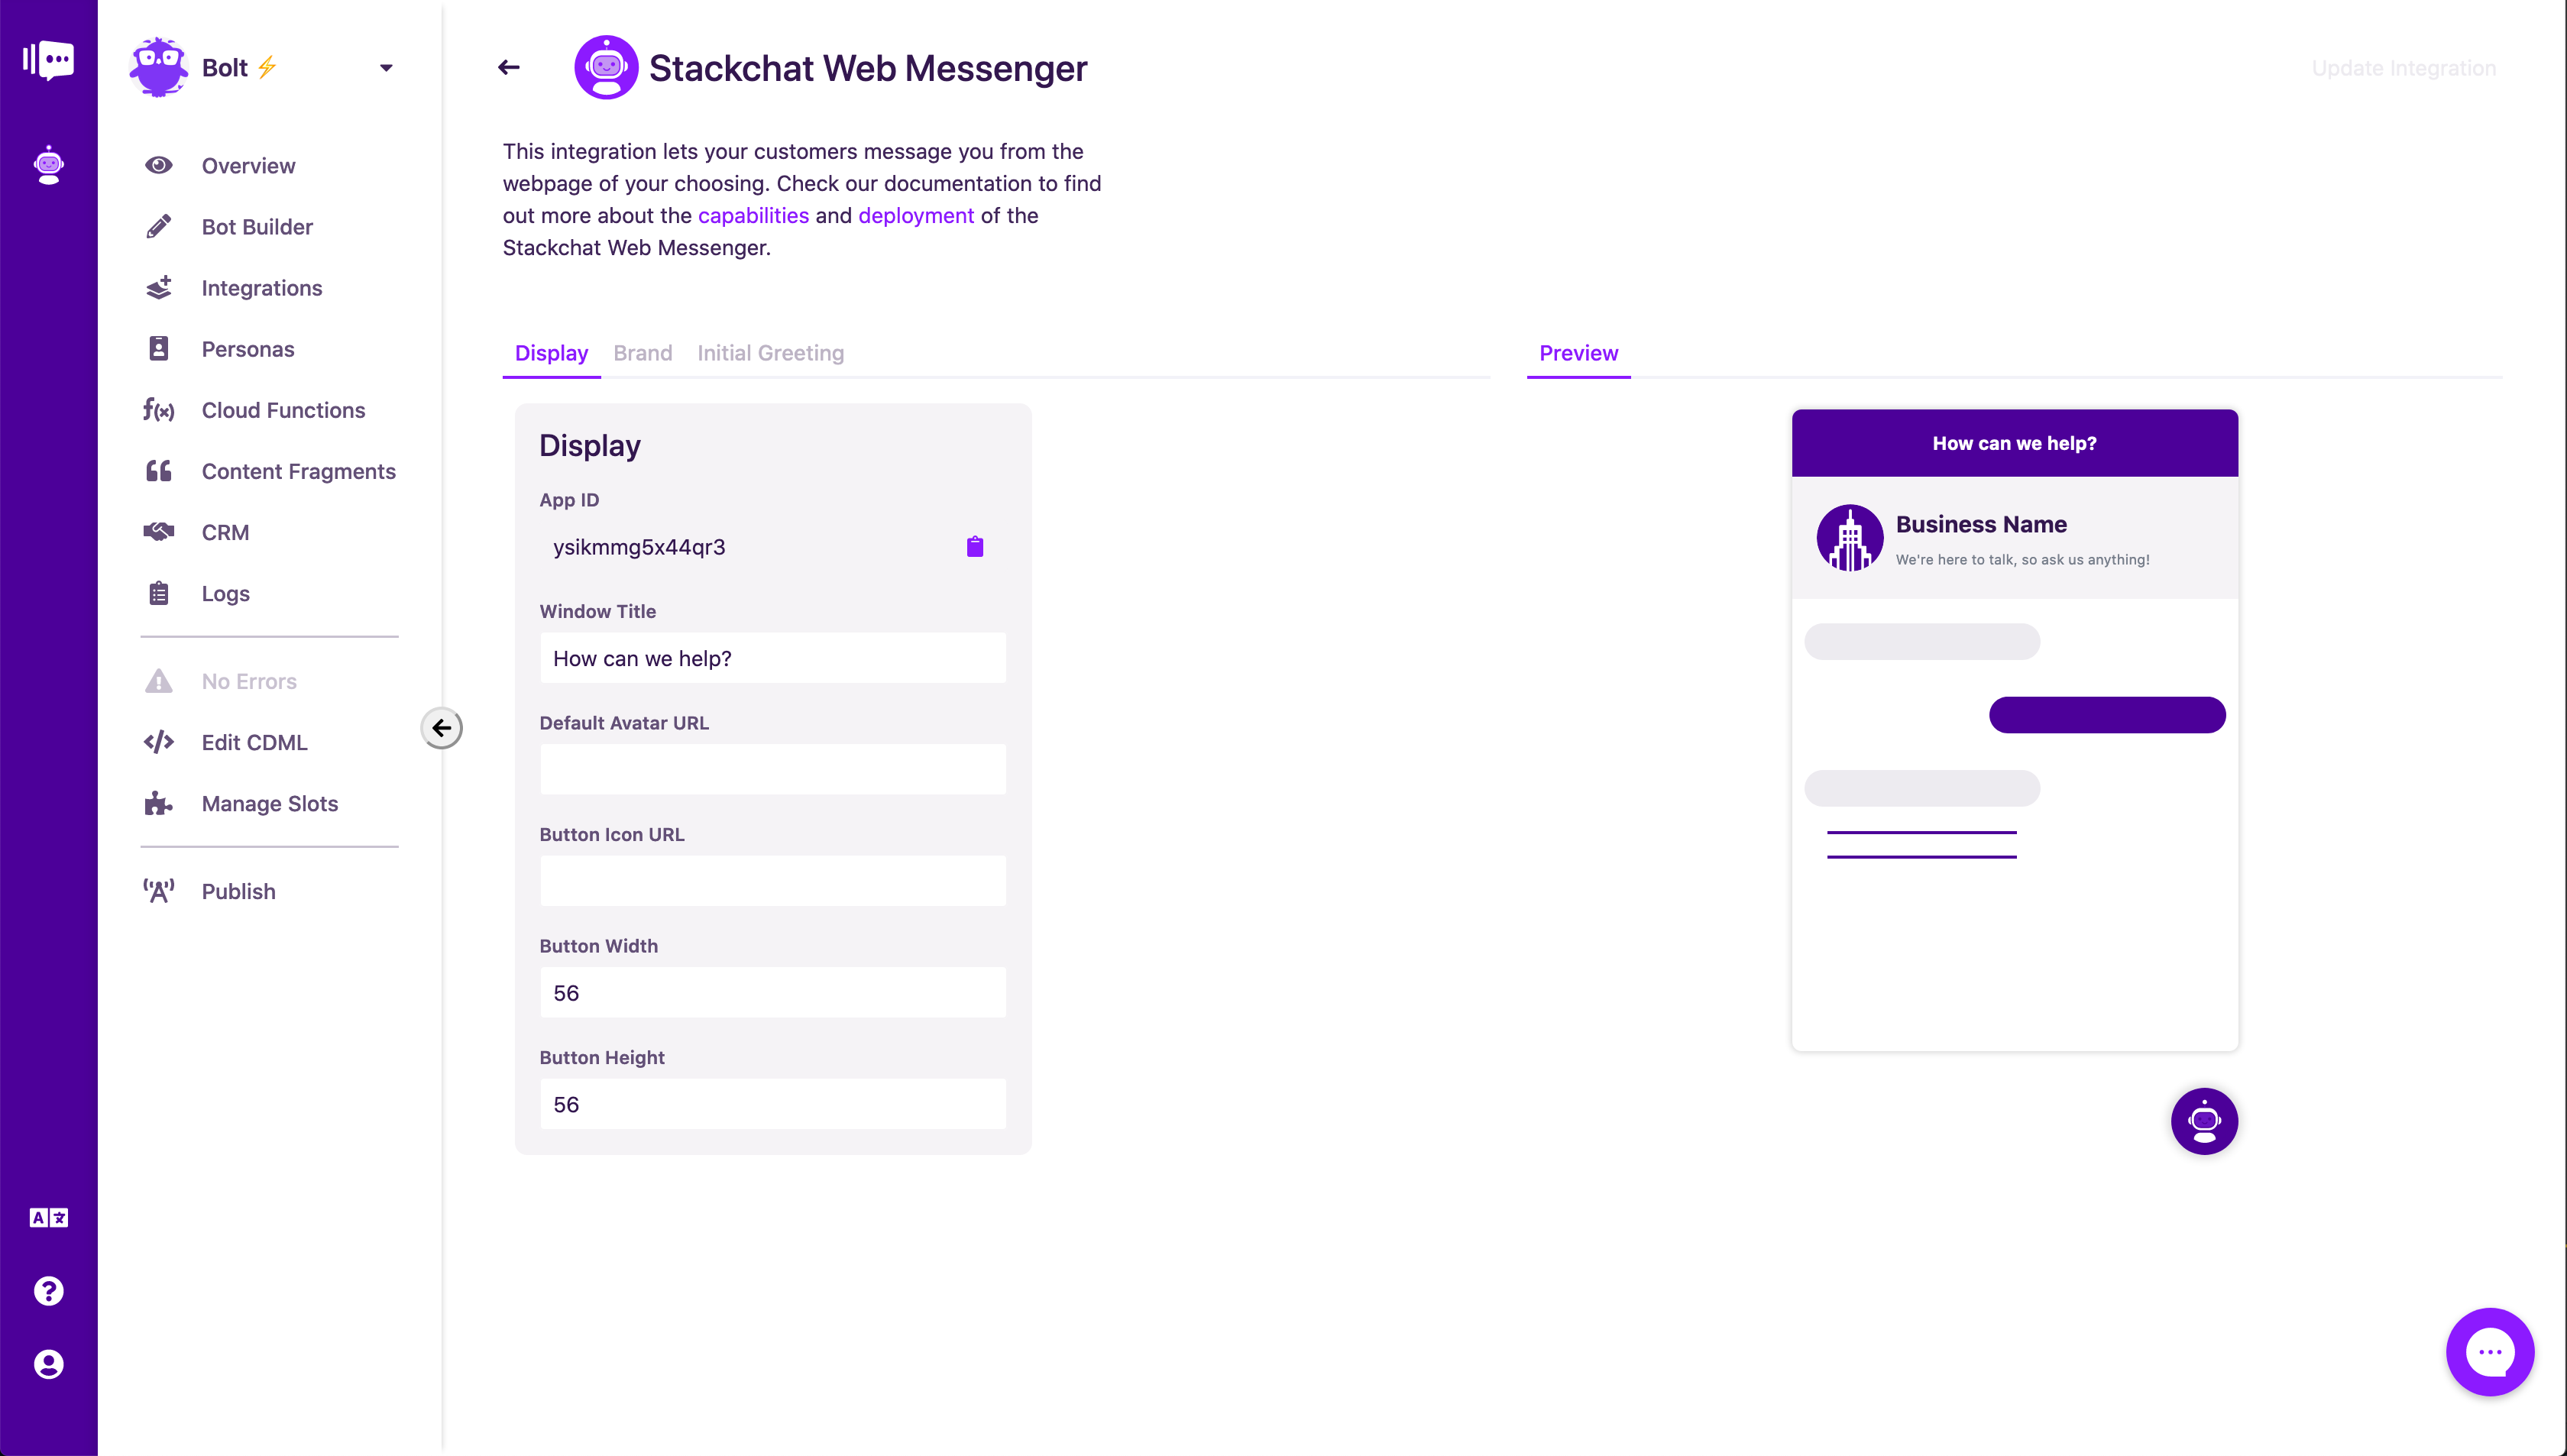 Bolt - Customisation options for Stackchat Web Messenger